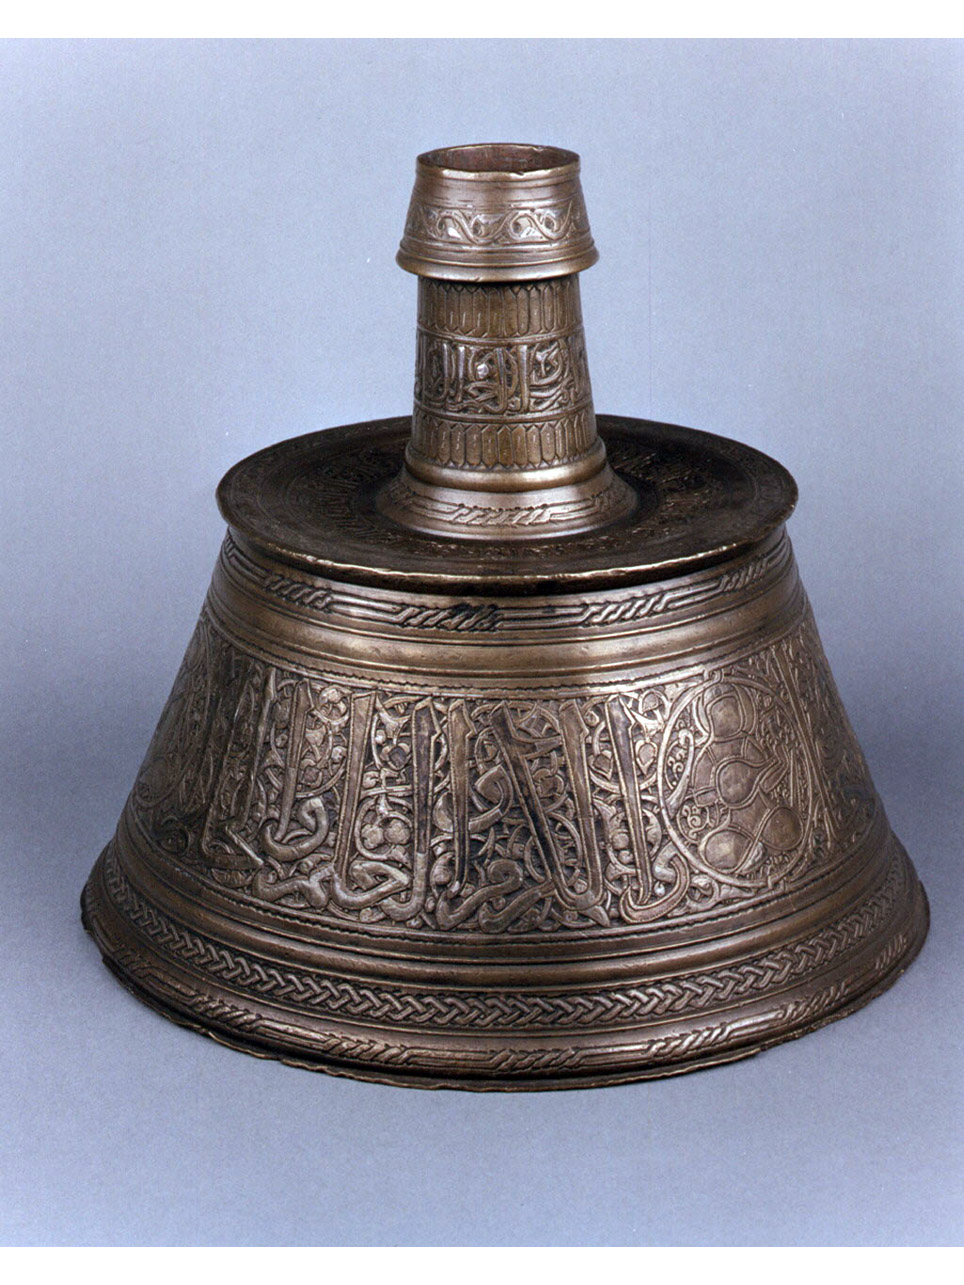 motivi decorativi a girali (candeliere) - manifattura araba (fine/inizio secc. XIII/ XIV)